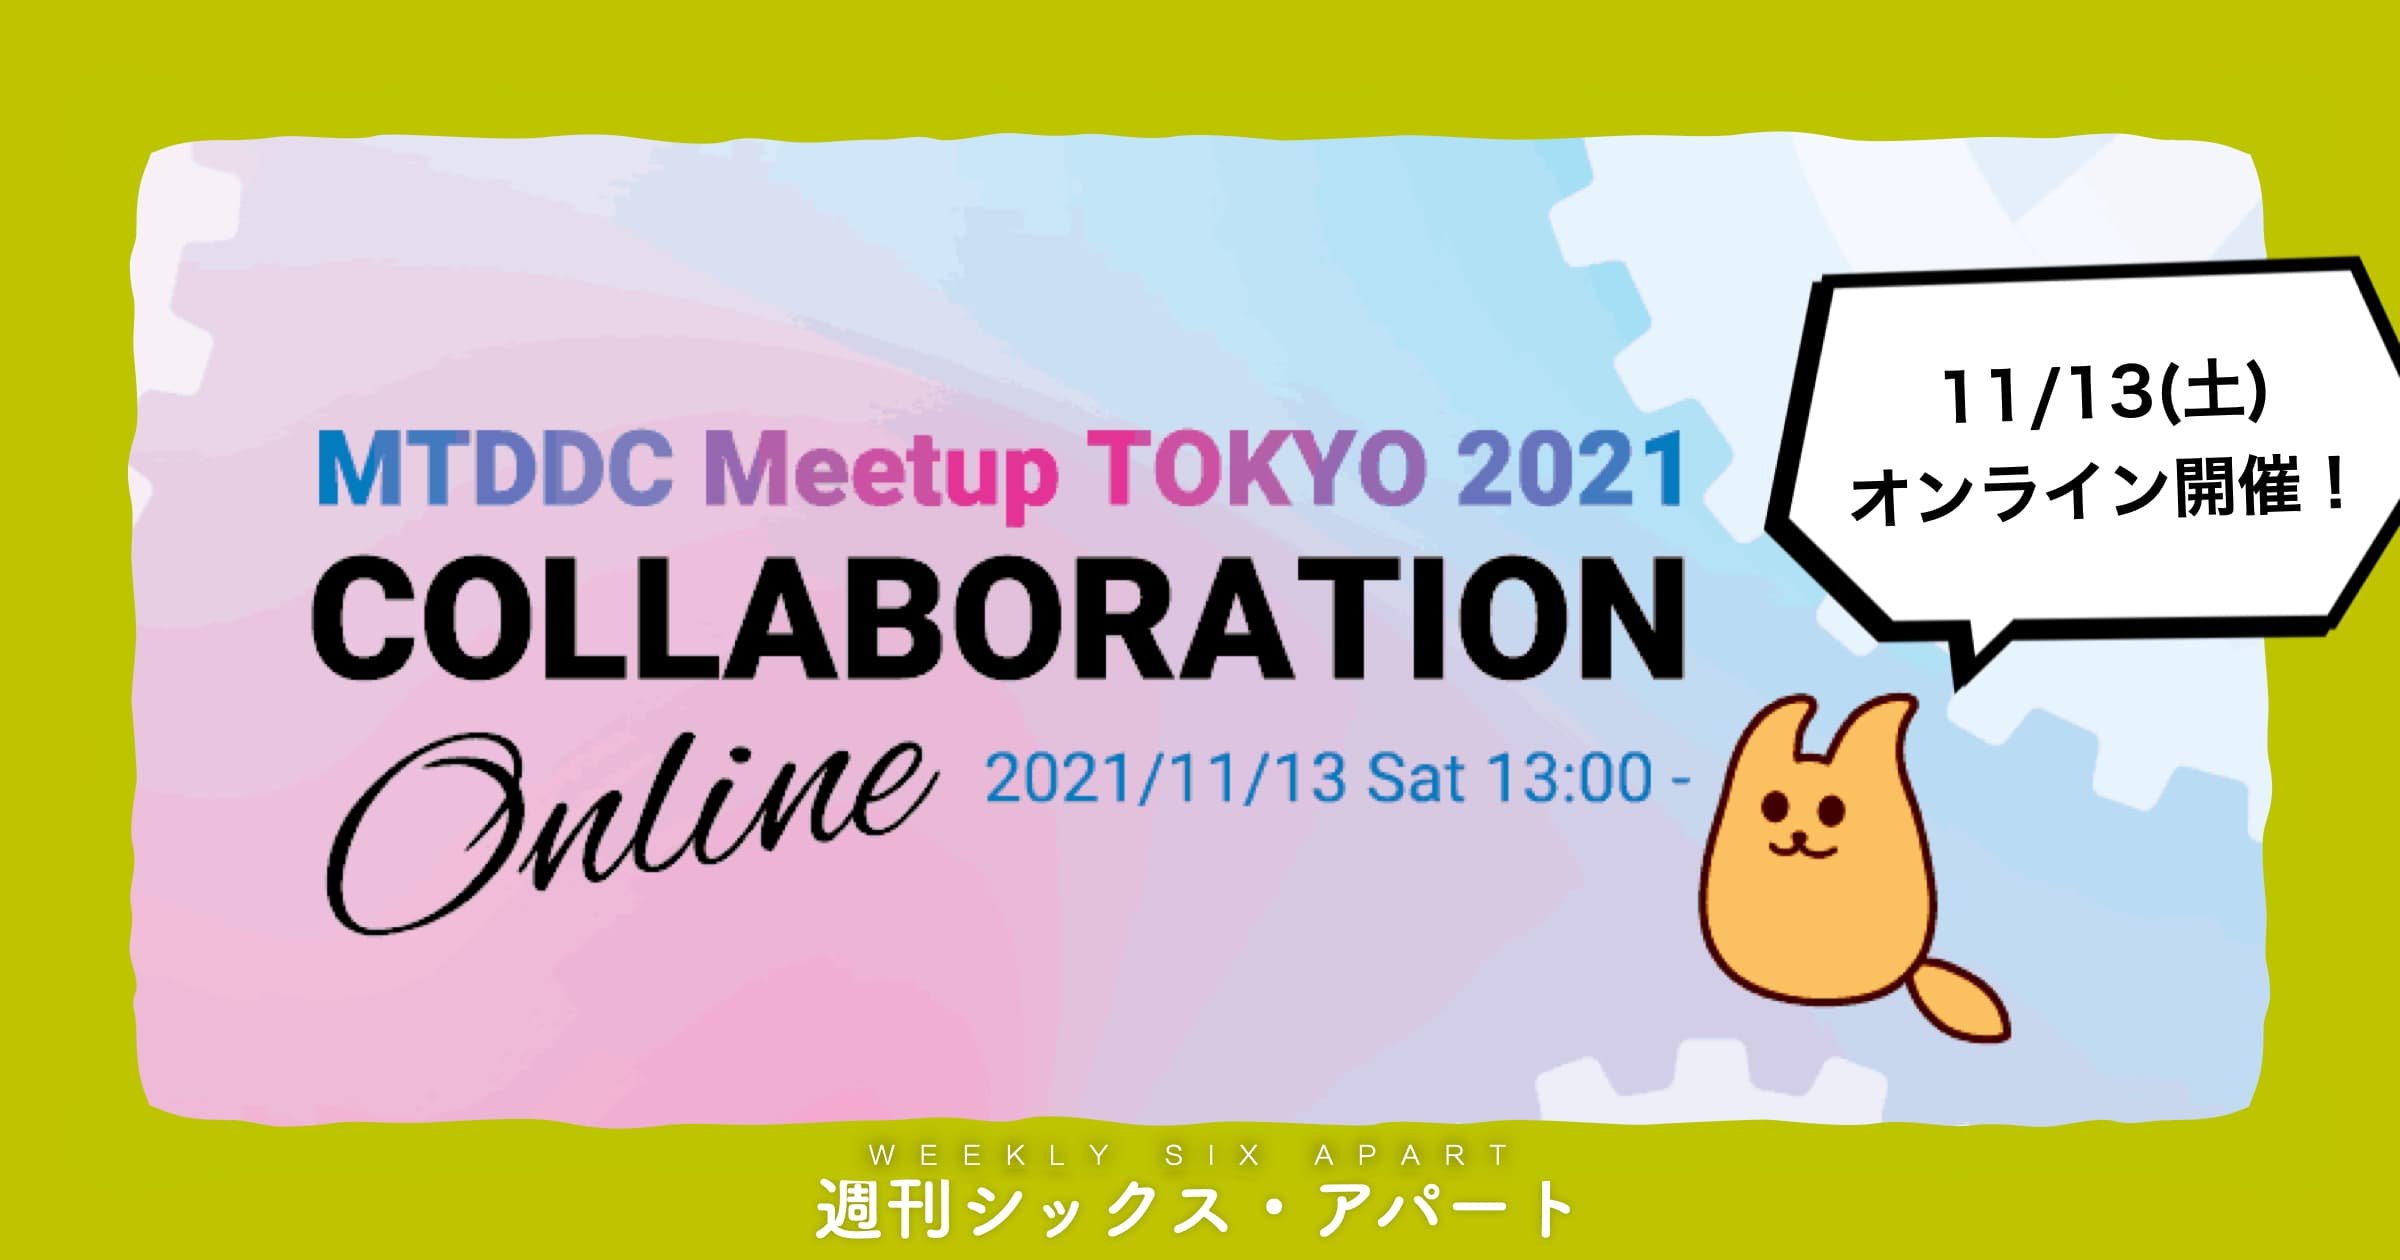 11/13土は MTDDC Meetup TOKYO 2021 オンライン開催です　#週刊SA